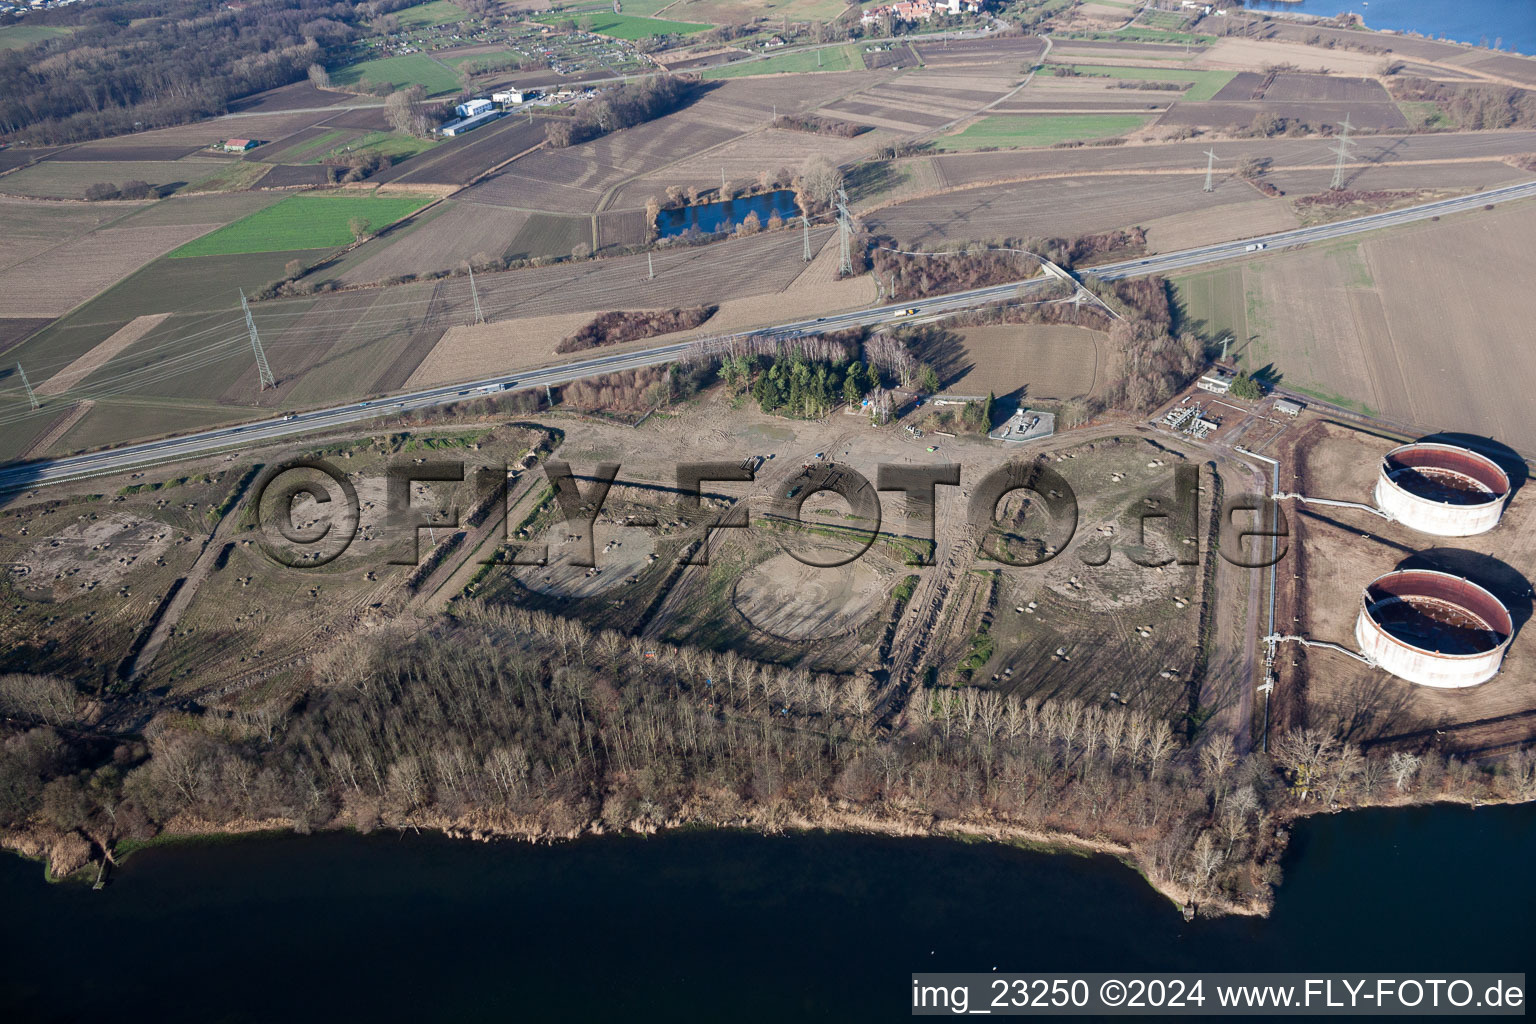 Vue aérienne de Le parc de stockage d'huile minérale de Wintershall en cours de démantèlement sur le Vieux Rhin à Jockgrim dans le département Rhénanie-Palatinat, Allemagne